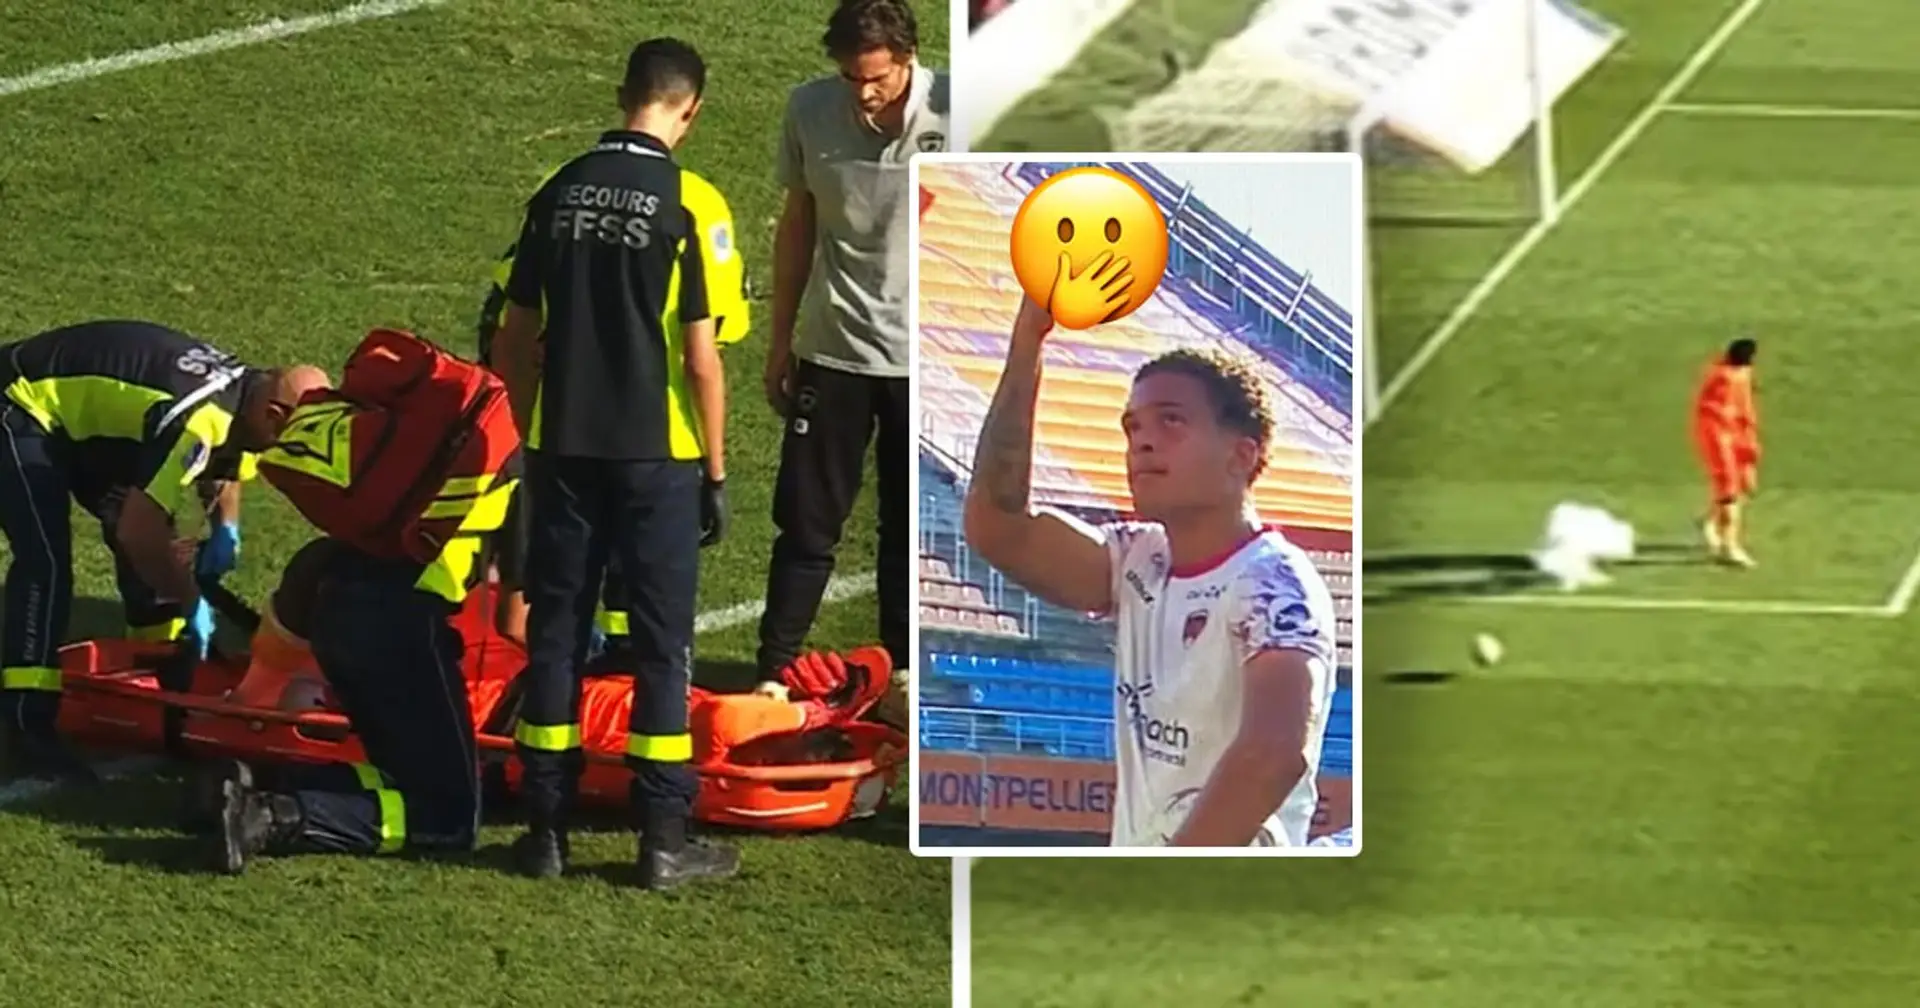 Während eines Spiels gegen Montpellier wurde Clermont-Torhüter Diaw mit einem Feuerwerkskörper beworfen: Er verlor das Bewusstsein und wurde auf einer Trage vom Spielfeld getragen